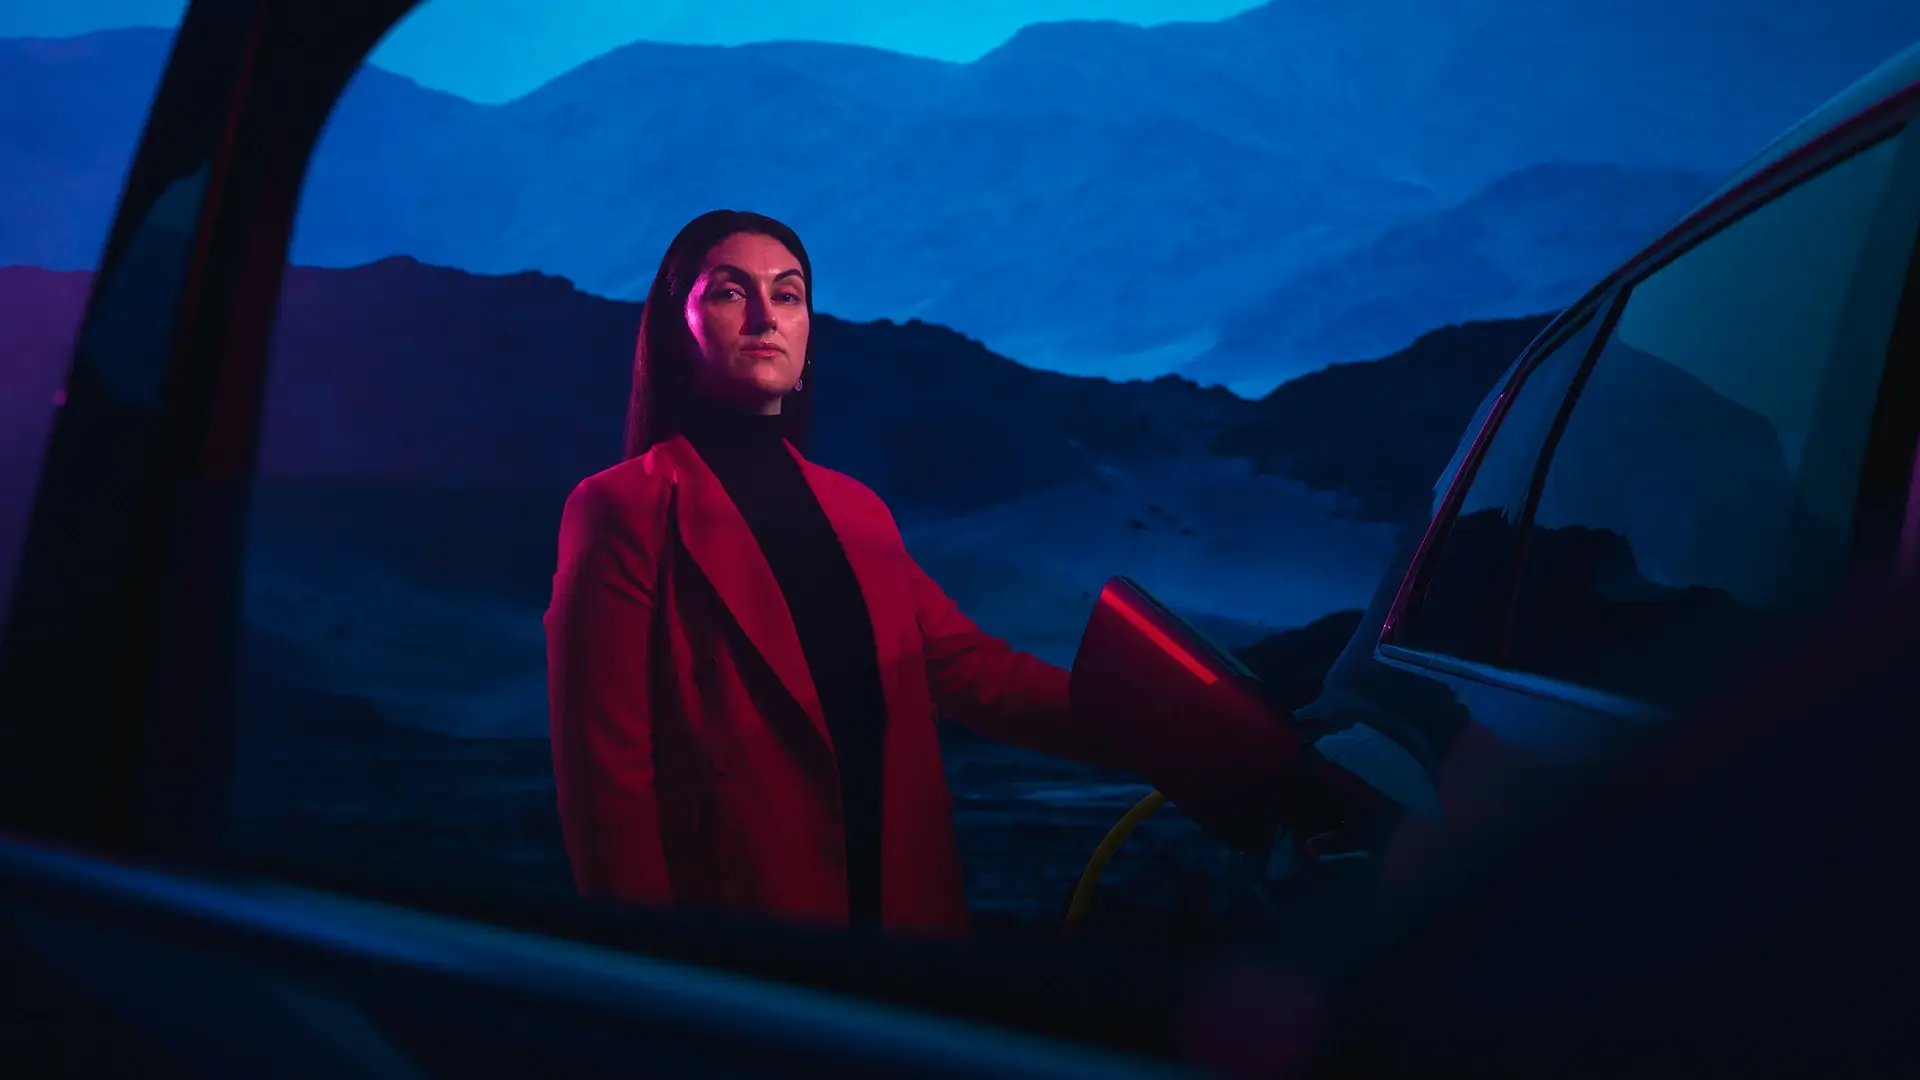 Femme professionnelle chargeant un véhicule électrique, ciel bleu nocturne